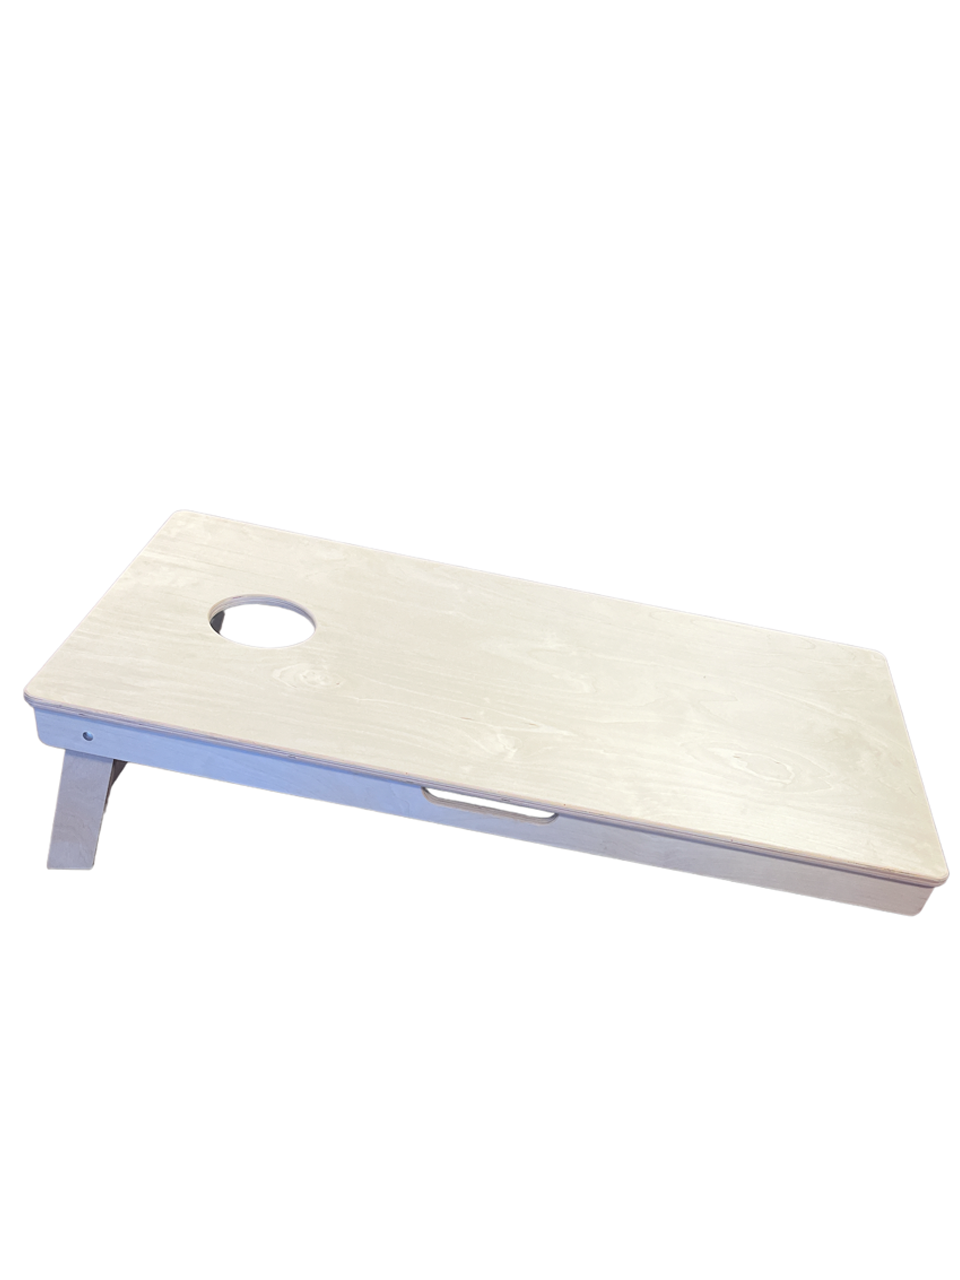 Pro Cornhole Boards - Basic Wood Triangle